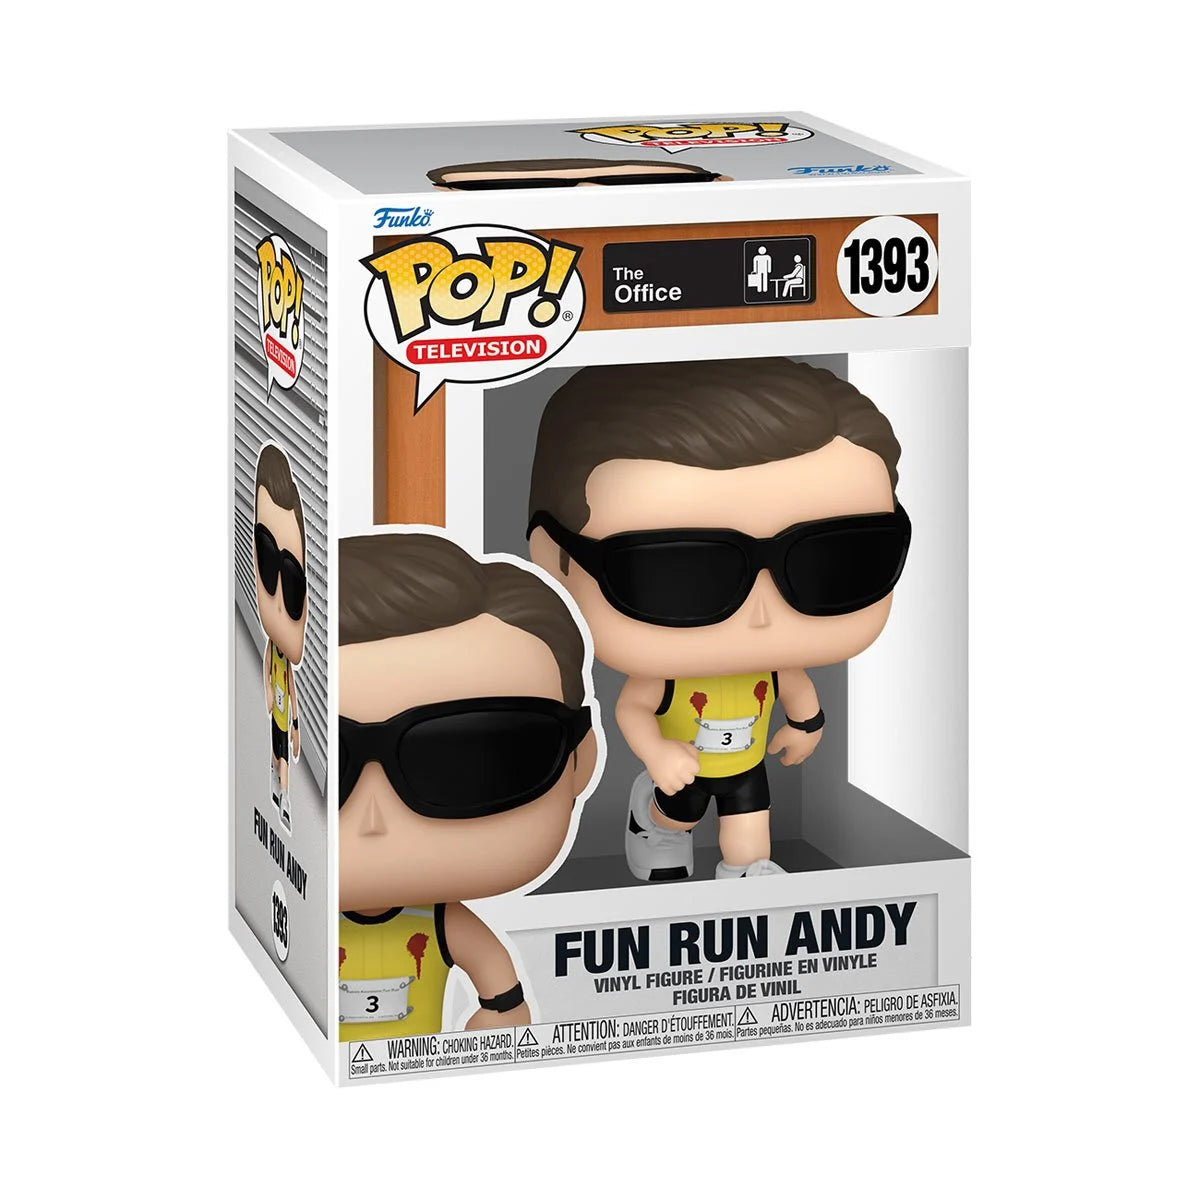 The Office Fun Run Andy Funko Pop!